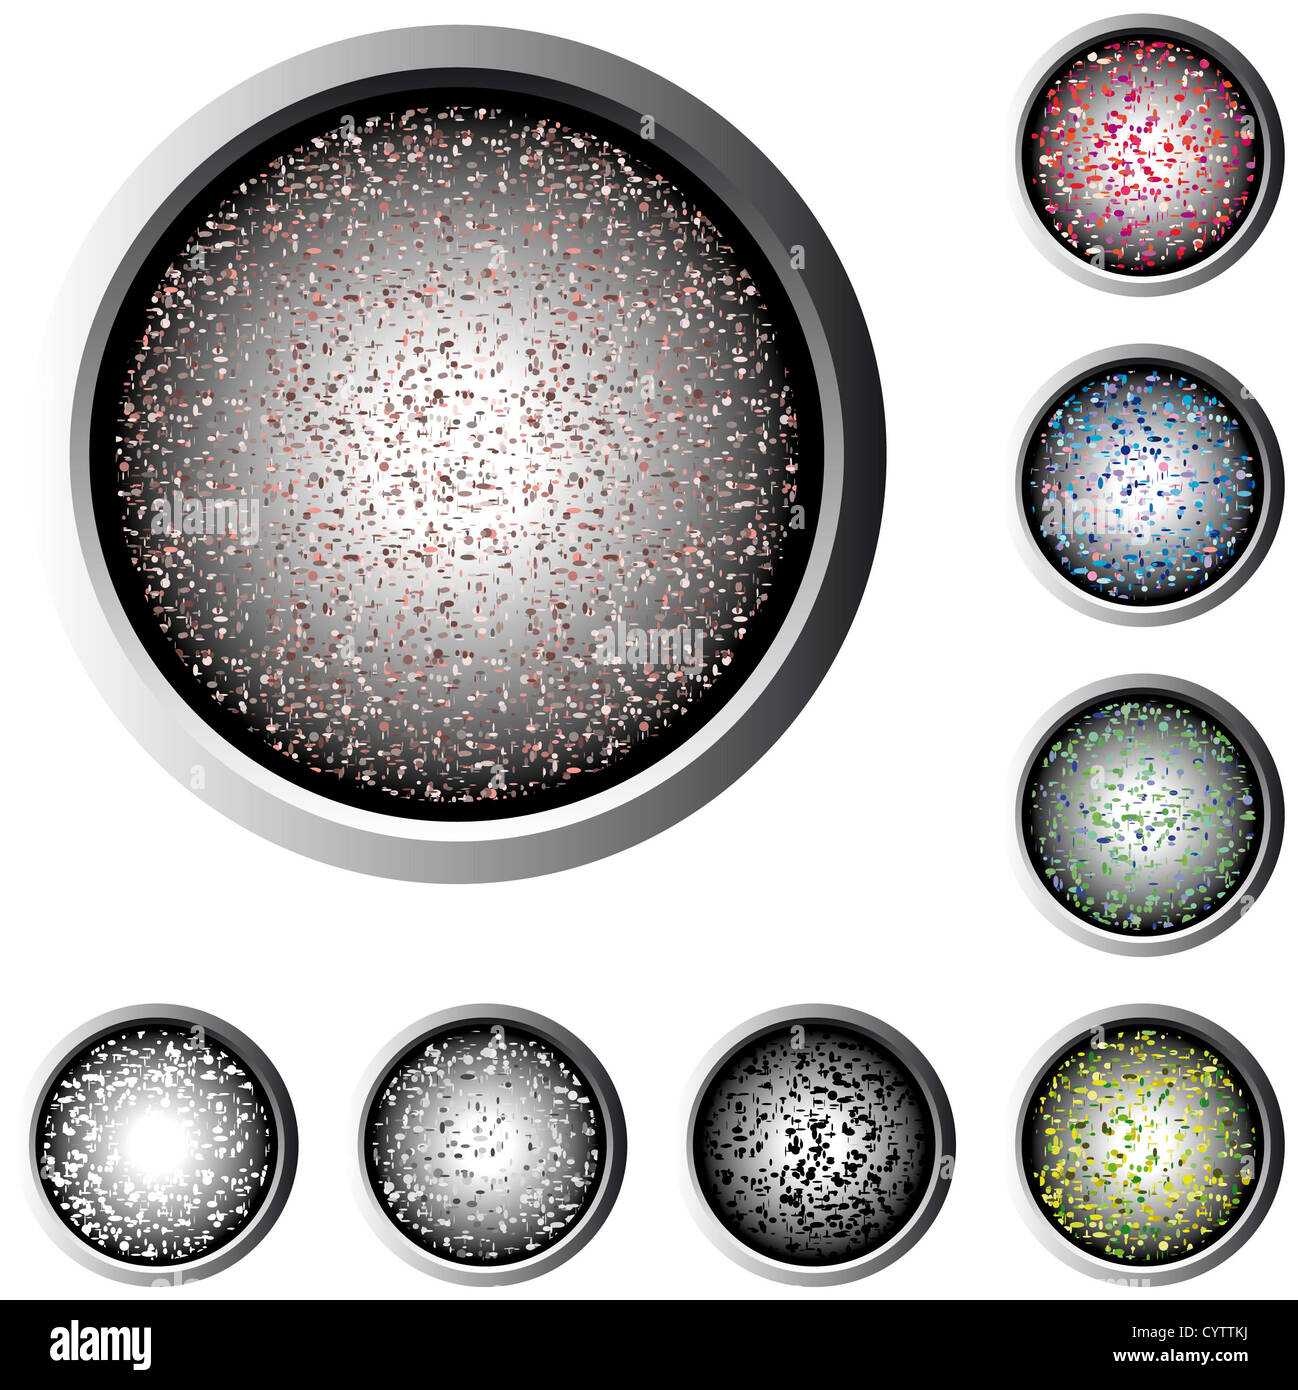 Boutons web avec mouchetures de couleurs pastel Banque D'Images